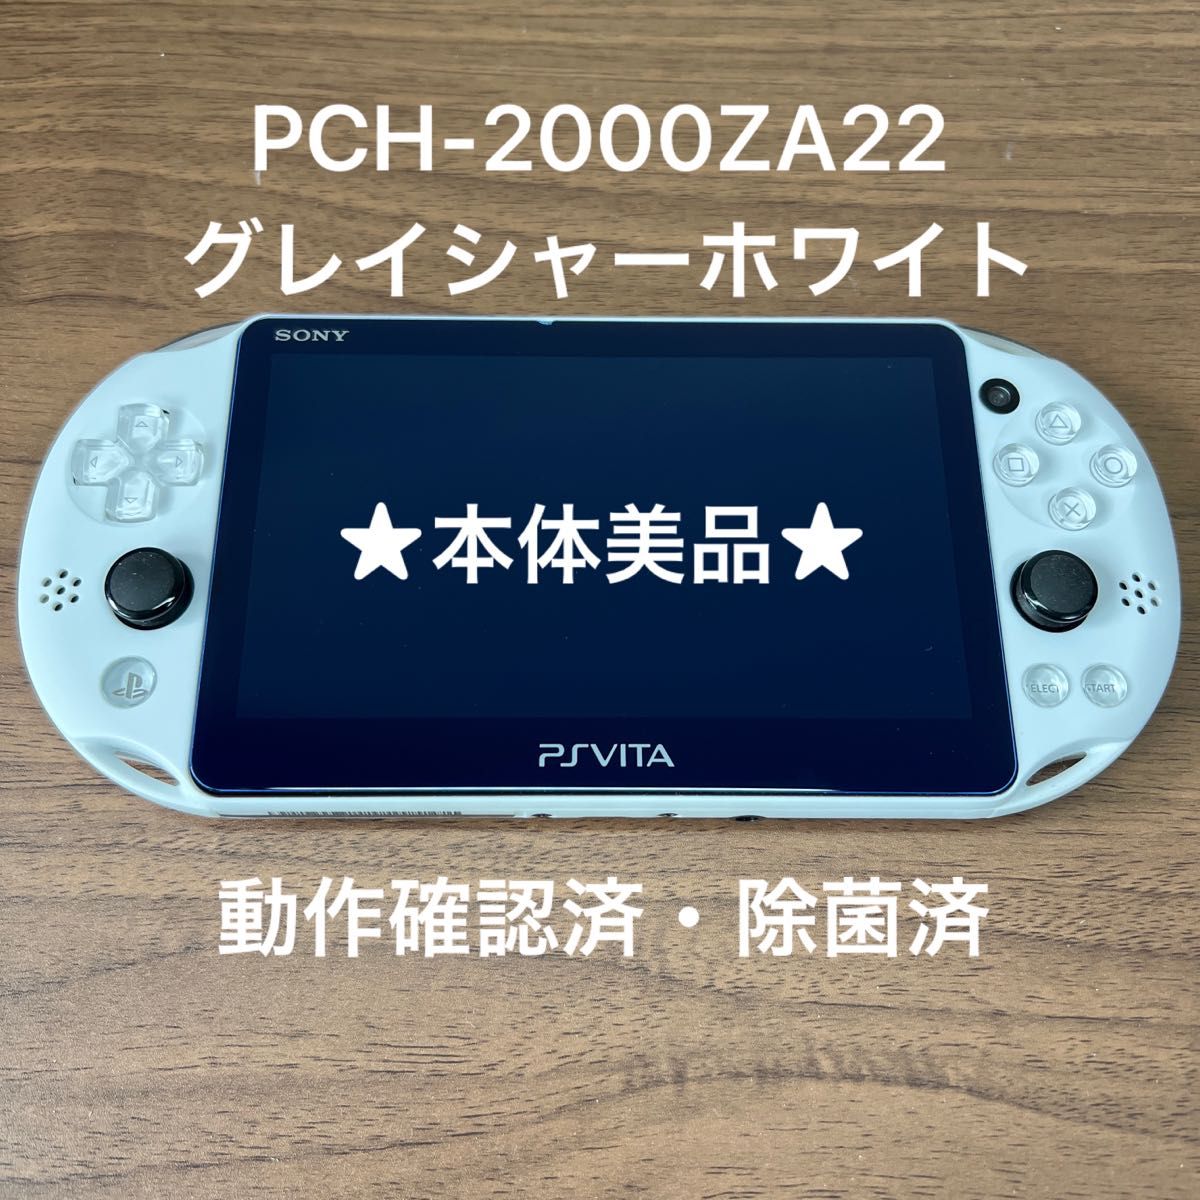 本体美品 PlayStation Vita PCH-2000 ZA22 グレイシャーホワイト 本体